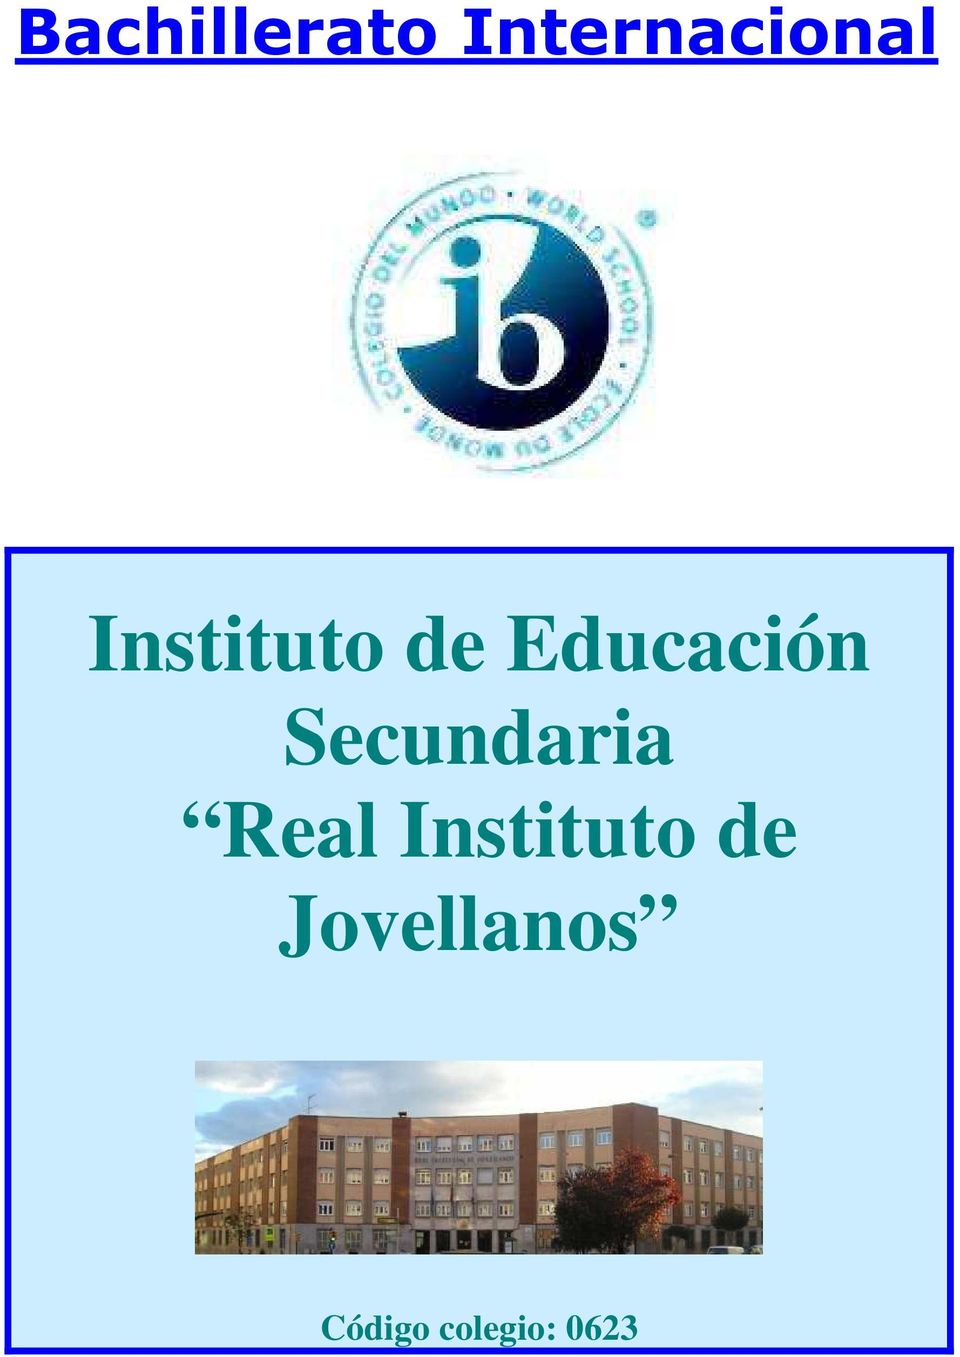 Secundaria Real Instituto